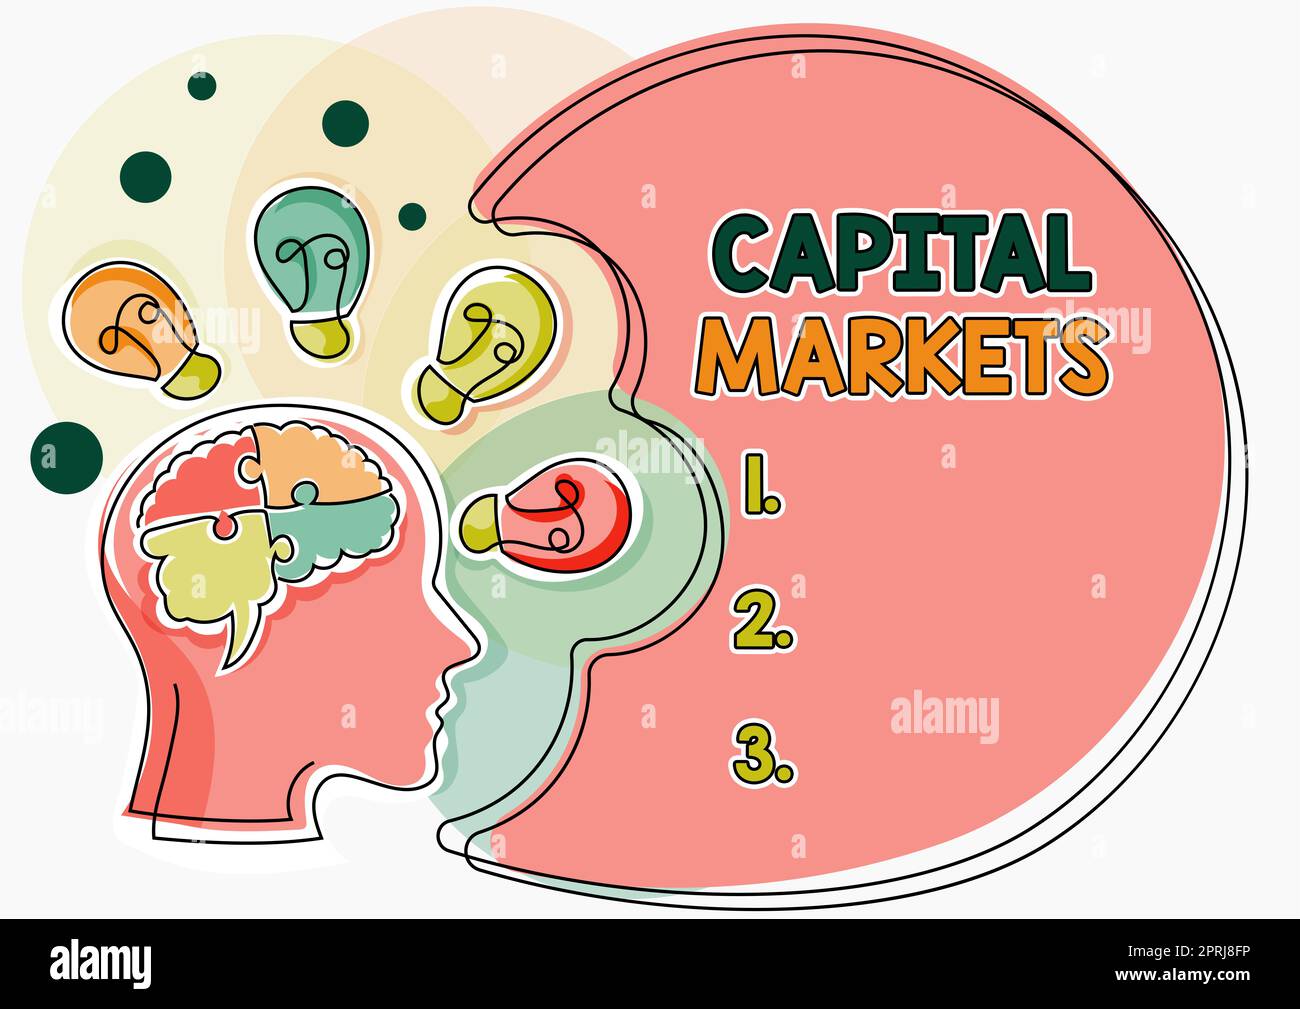 Handgeschriebenes Schild Capital MarketsAllow-Unternehmen sollen Mittel beschaffen, indem sie Marktsicherheit bieten. Geschäftsüberblick ermöglicht Unternehmen die Kapitalbeschaffung durch Gewährleistung von Marktsicherheit Stockfoto